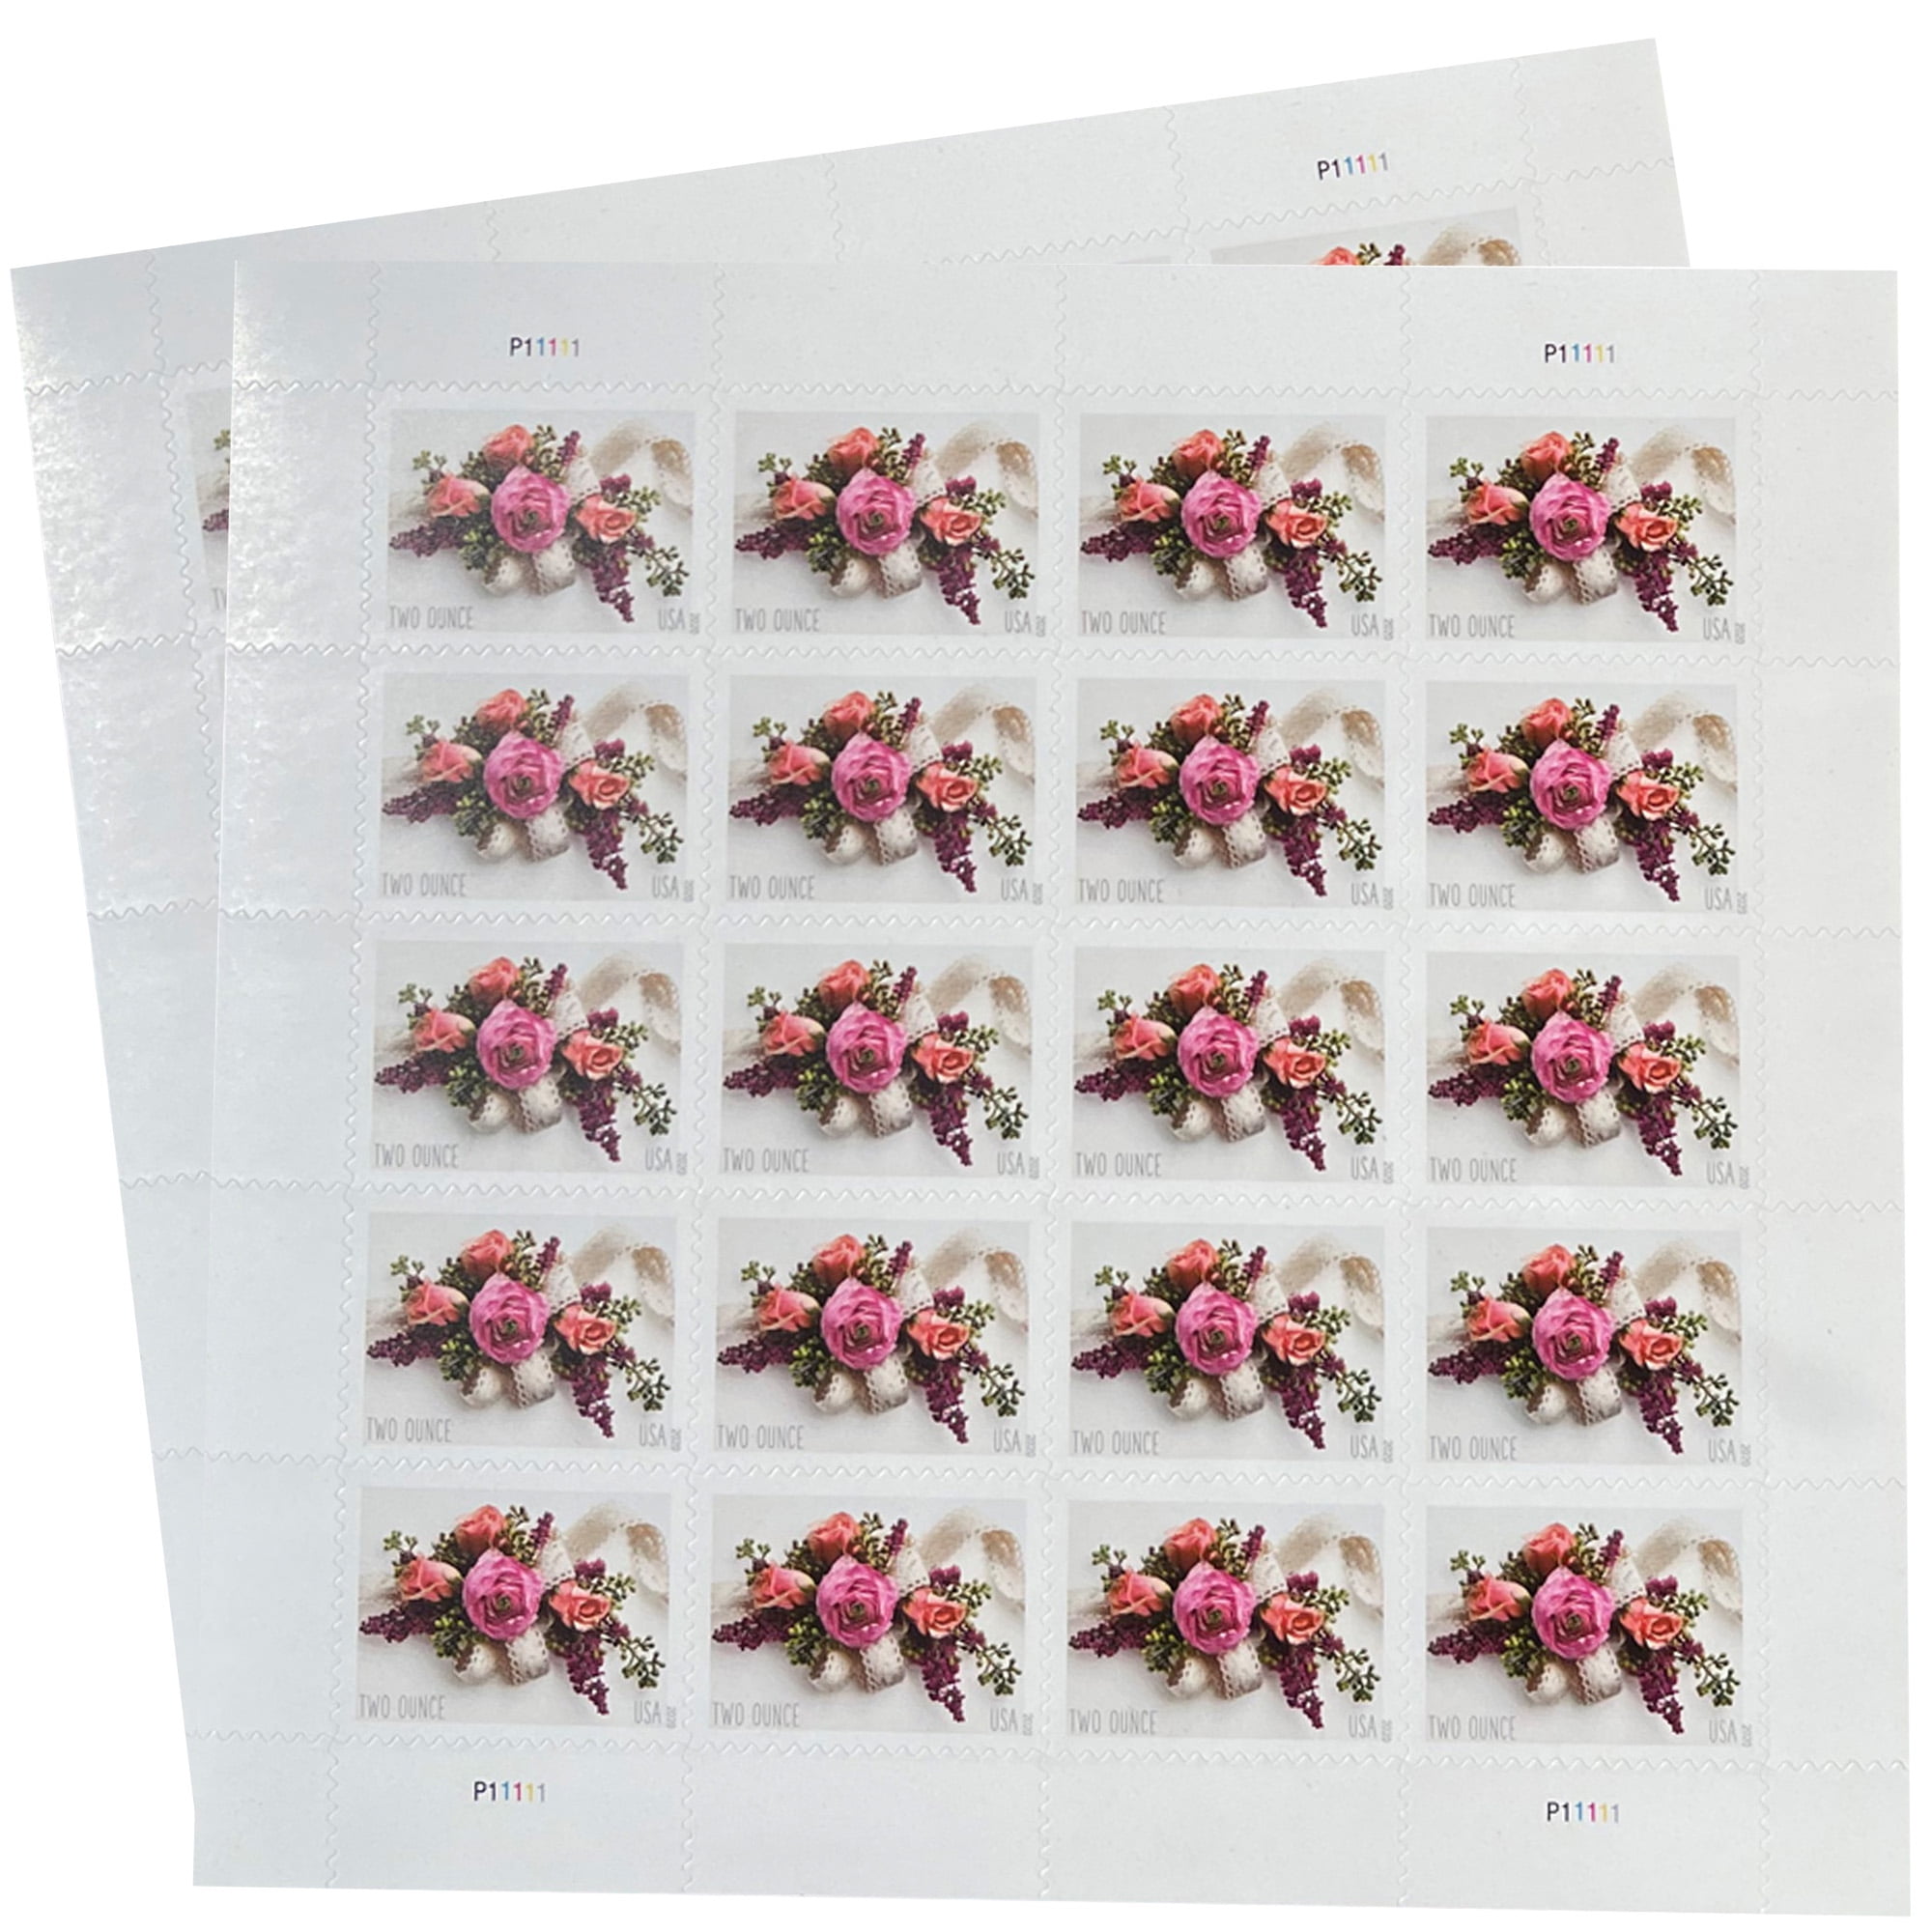 20 USPS Wedding Rose Forever Stamps